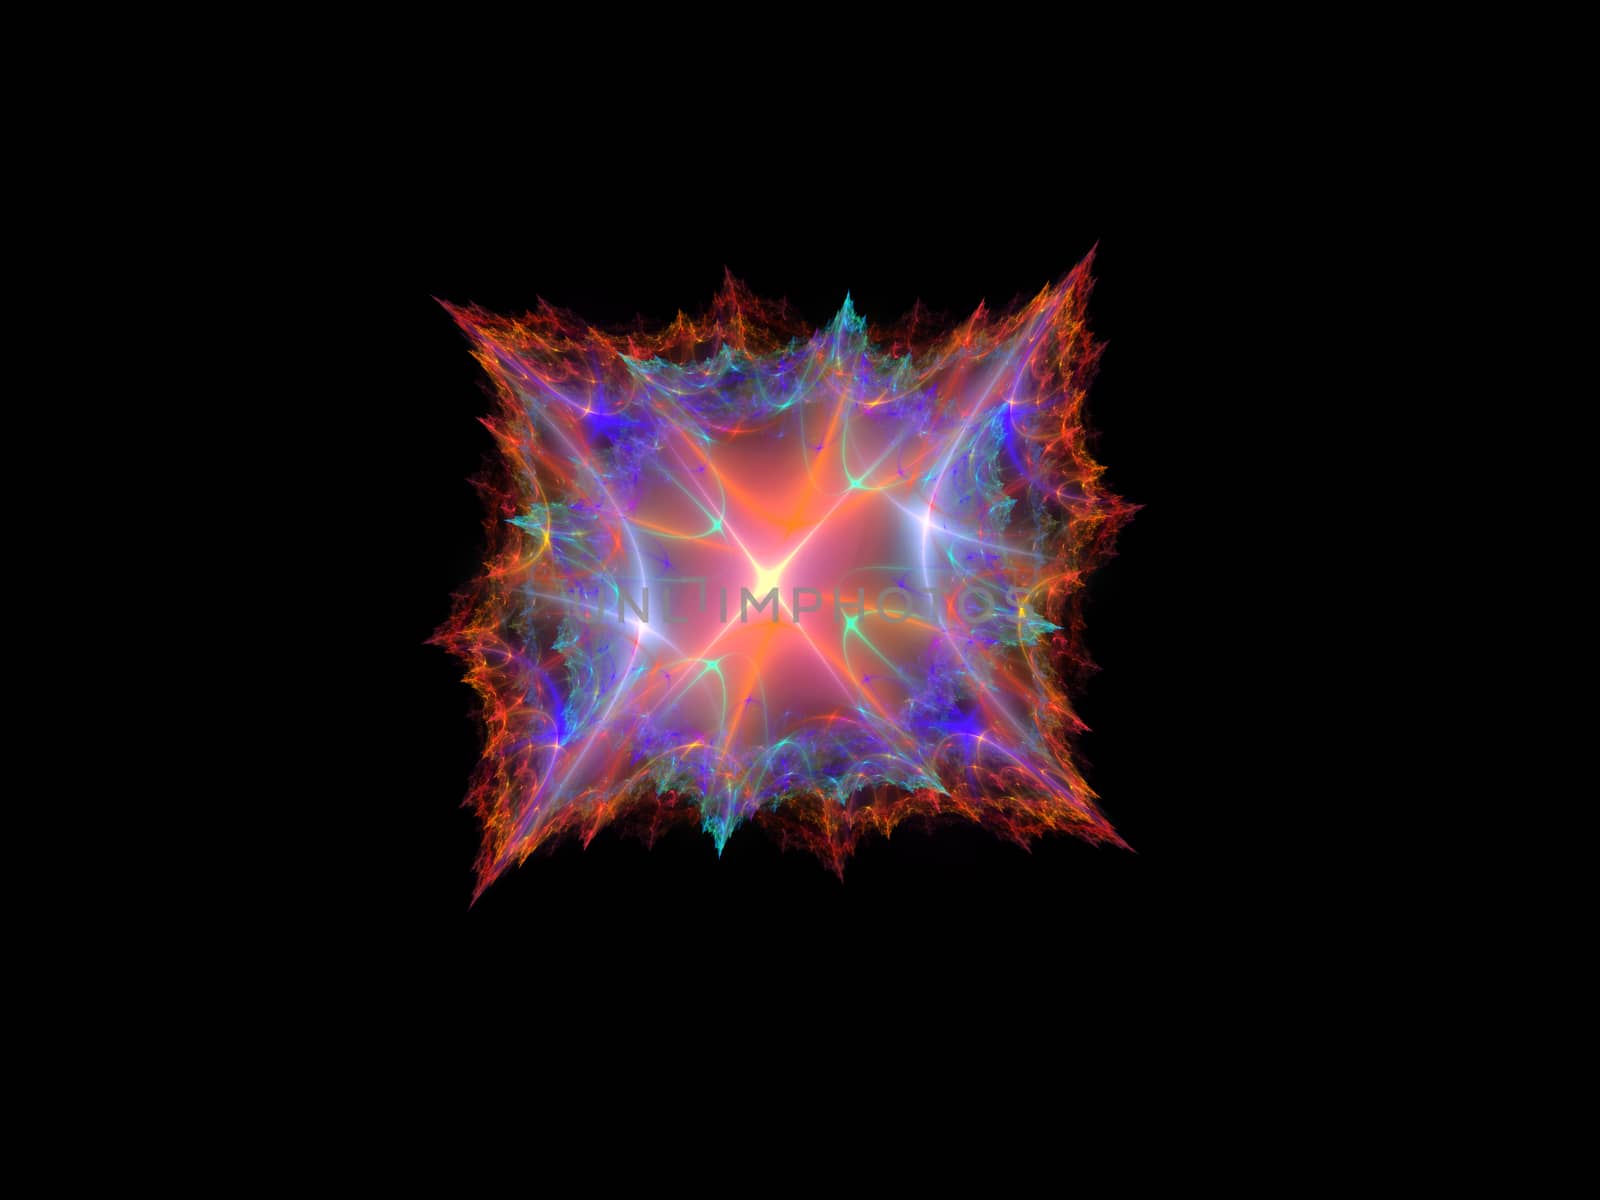 Fractal Star Burst On Black Background by Sem007